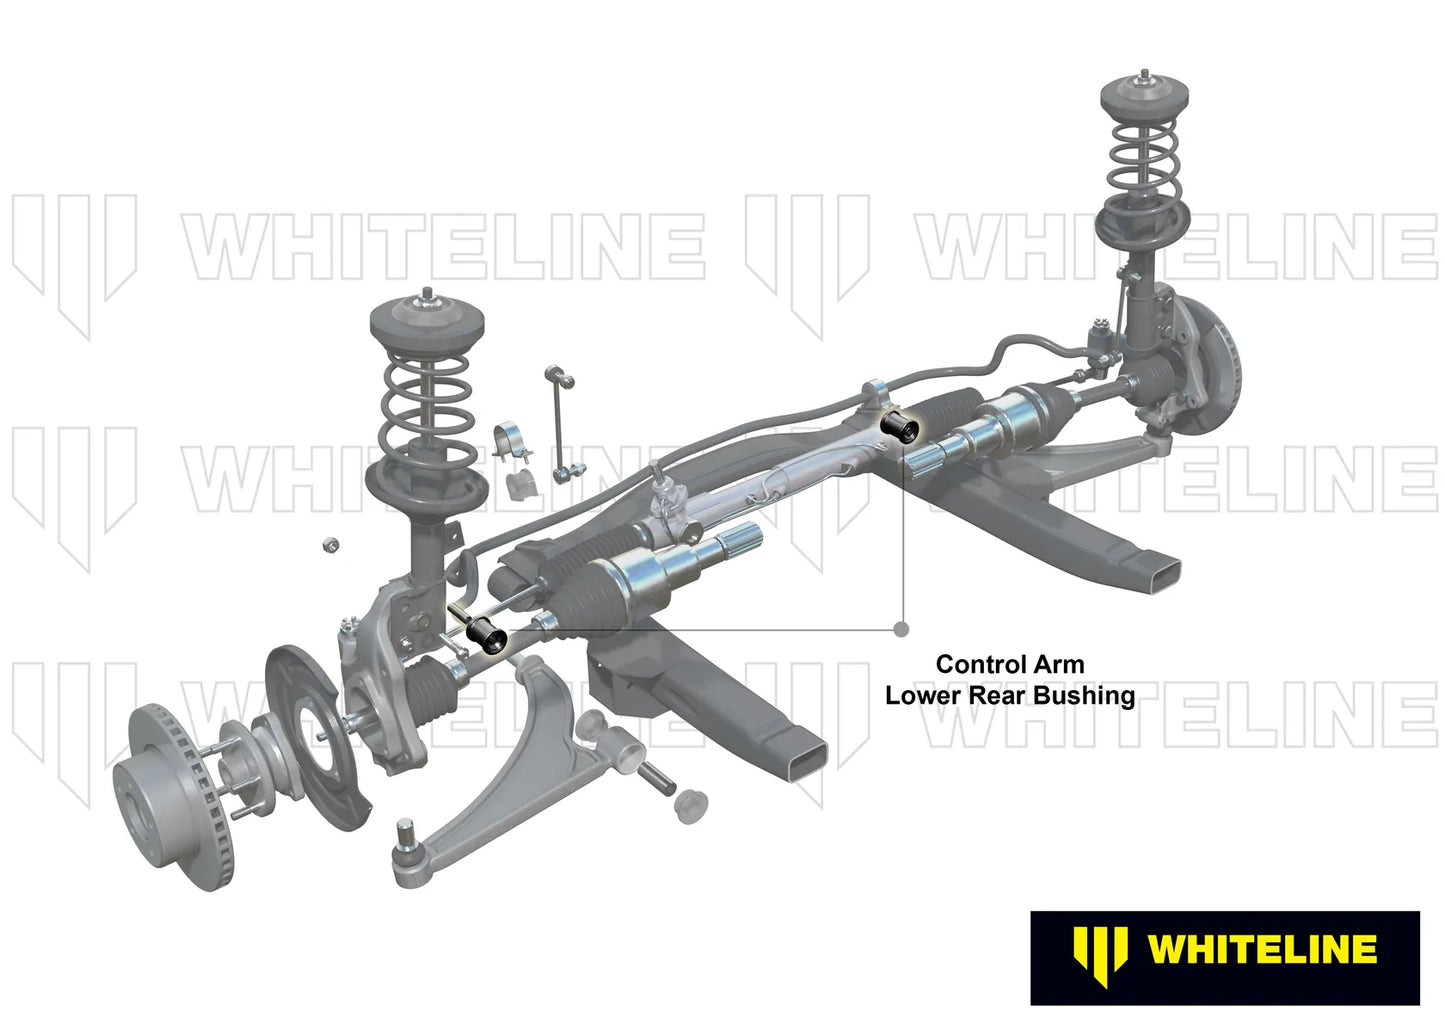 Whiteline Anti-Lift Kit - Honda Civic Models (Inc. 2017+ SI / 2017+ Type R)